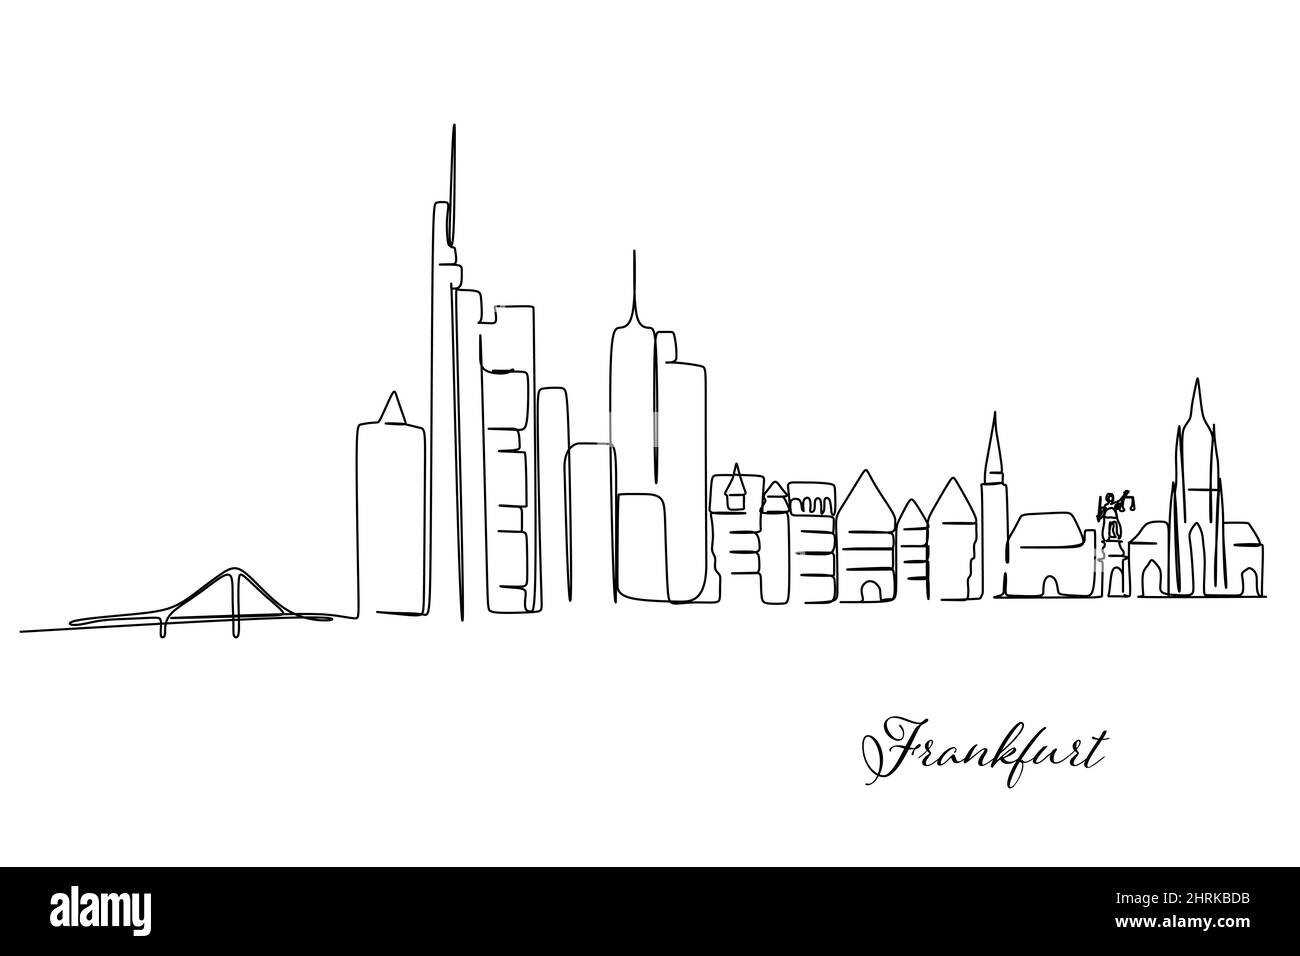 Eine durchgehende Linienzeichnung der Frankfurter Skyline, Deutschland. Berühmte Wolkenkratzerlandschaft. Welt reisen Wand Dekor Home Kunst Poster Print Konzept. Stockfoto